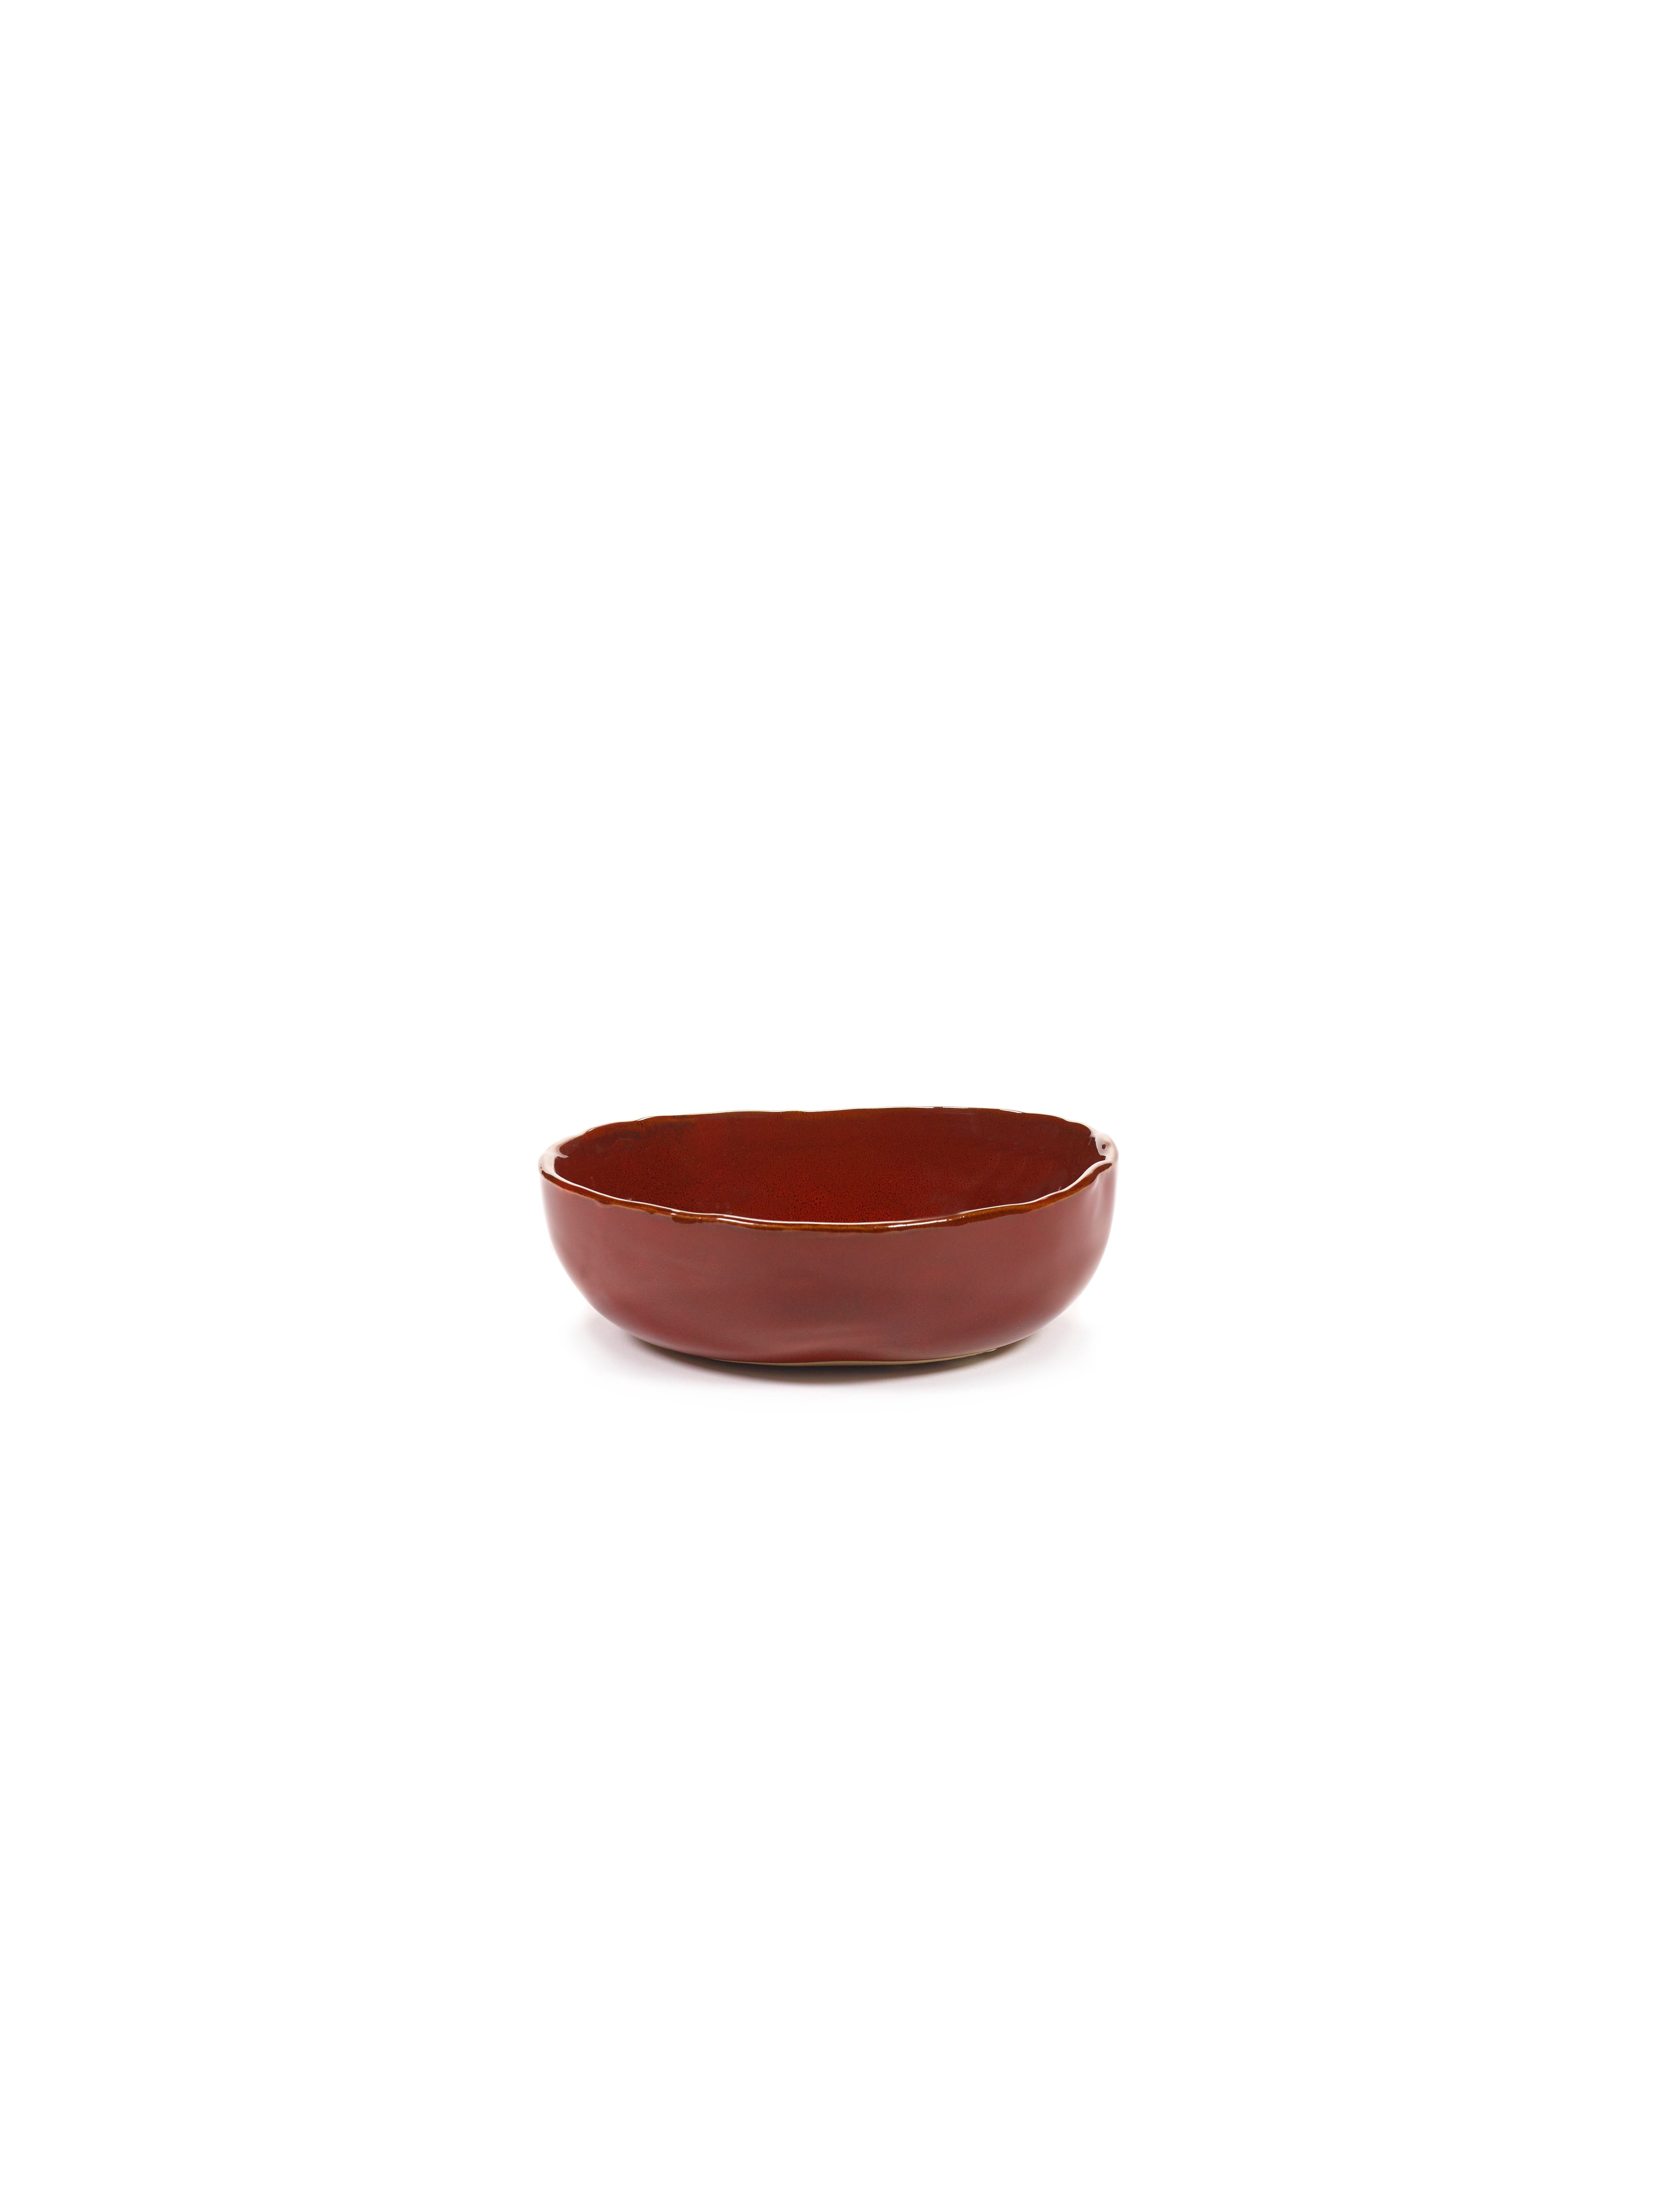 Bowl S - La Mère by Marie Michielssen - Venetian red